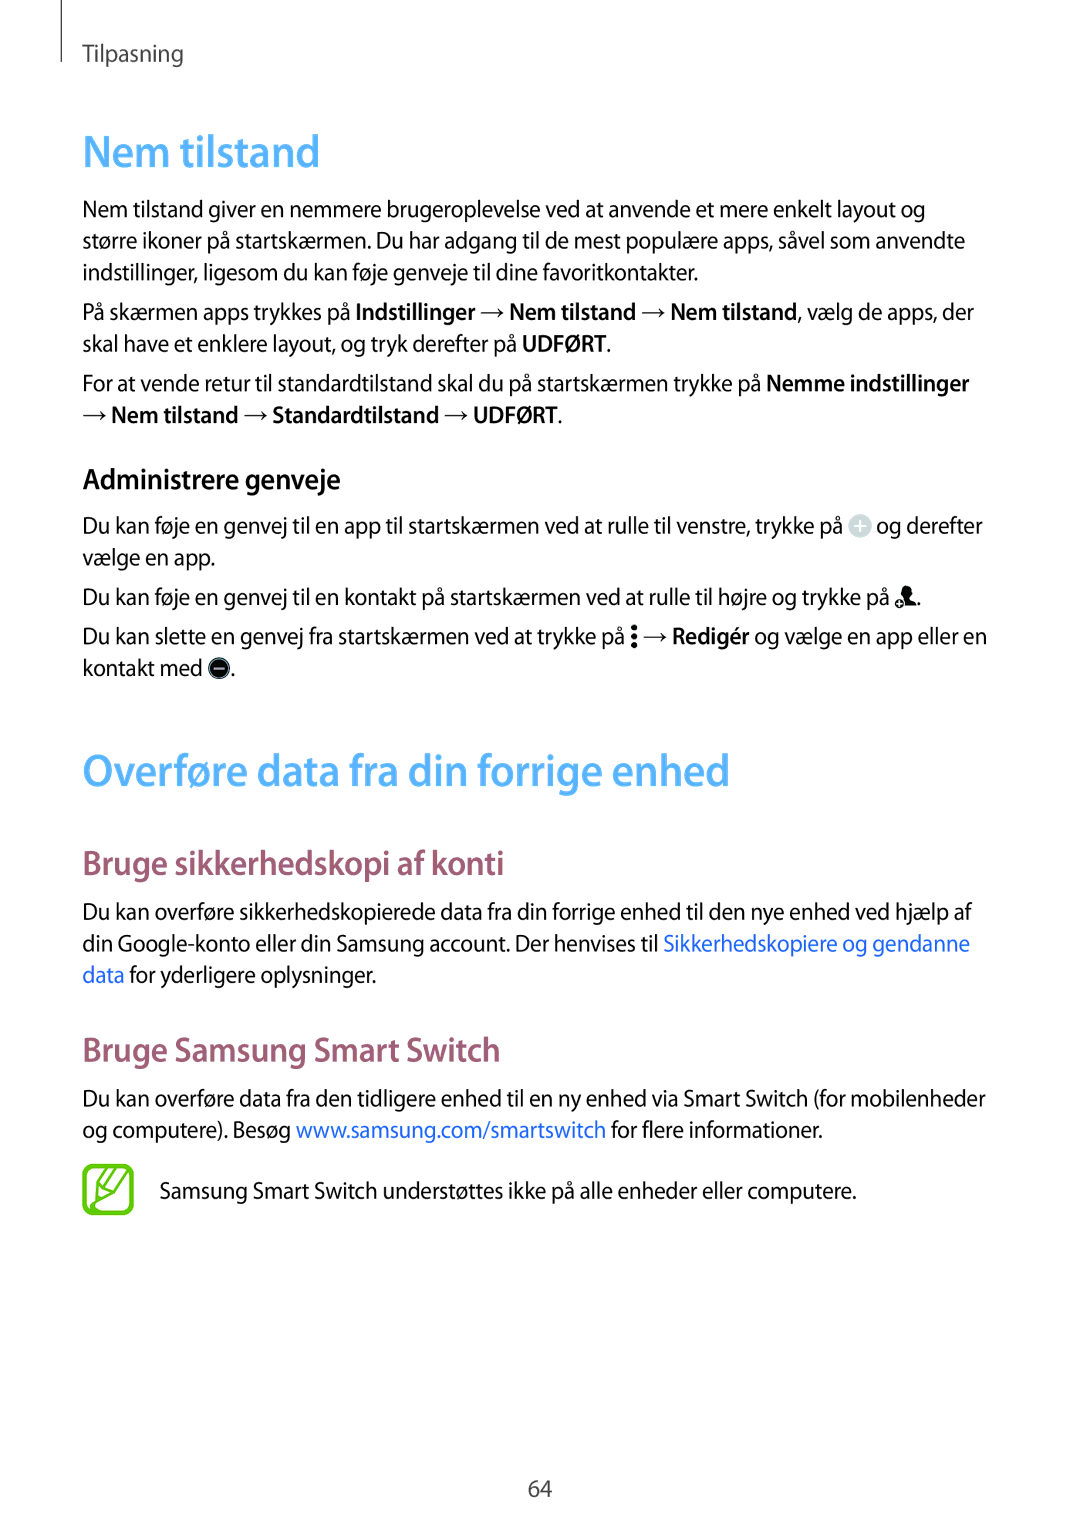 Samsung SM-G800FZBANEE, SM-G800FZWANEE Nem tilstand, Overføre data fra din forrige enhed, Bruge sikkerhedskopi af konti 